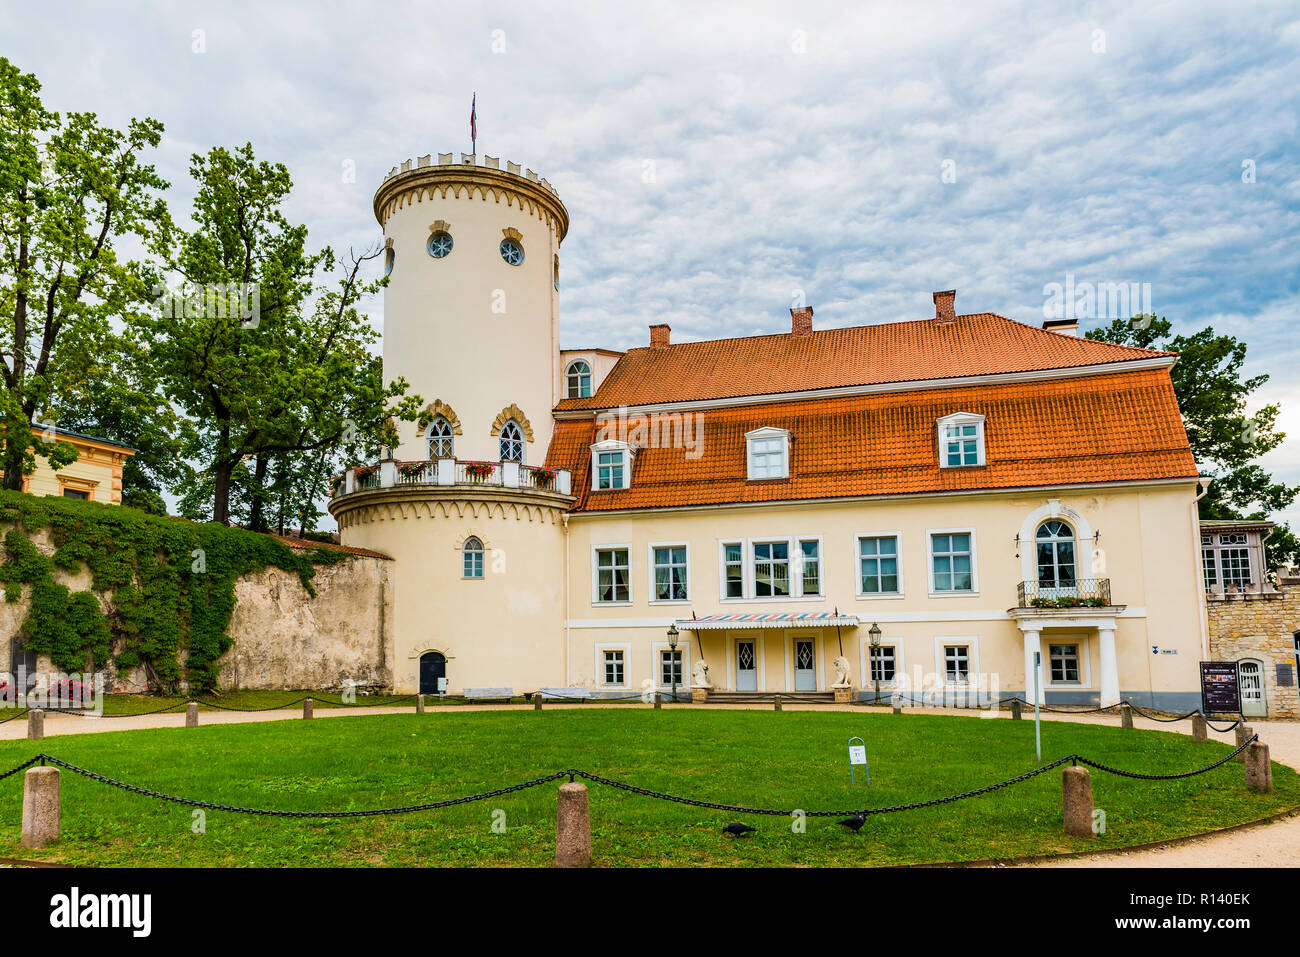 Nouveau château blanc dans la vieille ville de Riga - Riga - Lettonie, Pays Baltes, Europe. Banque D'Images